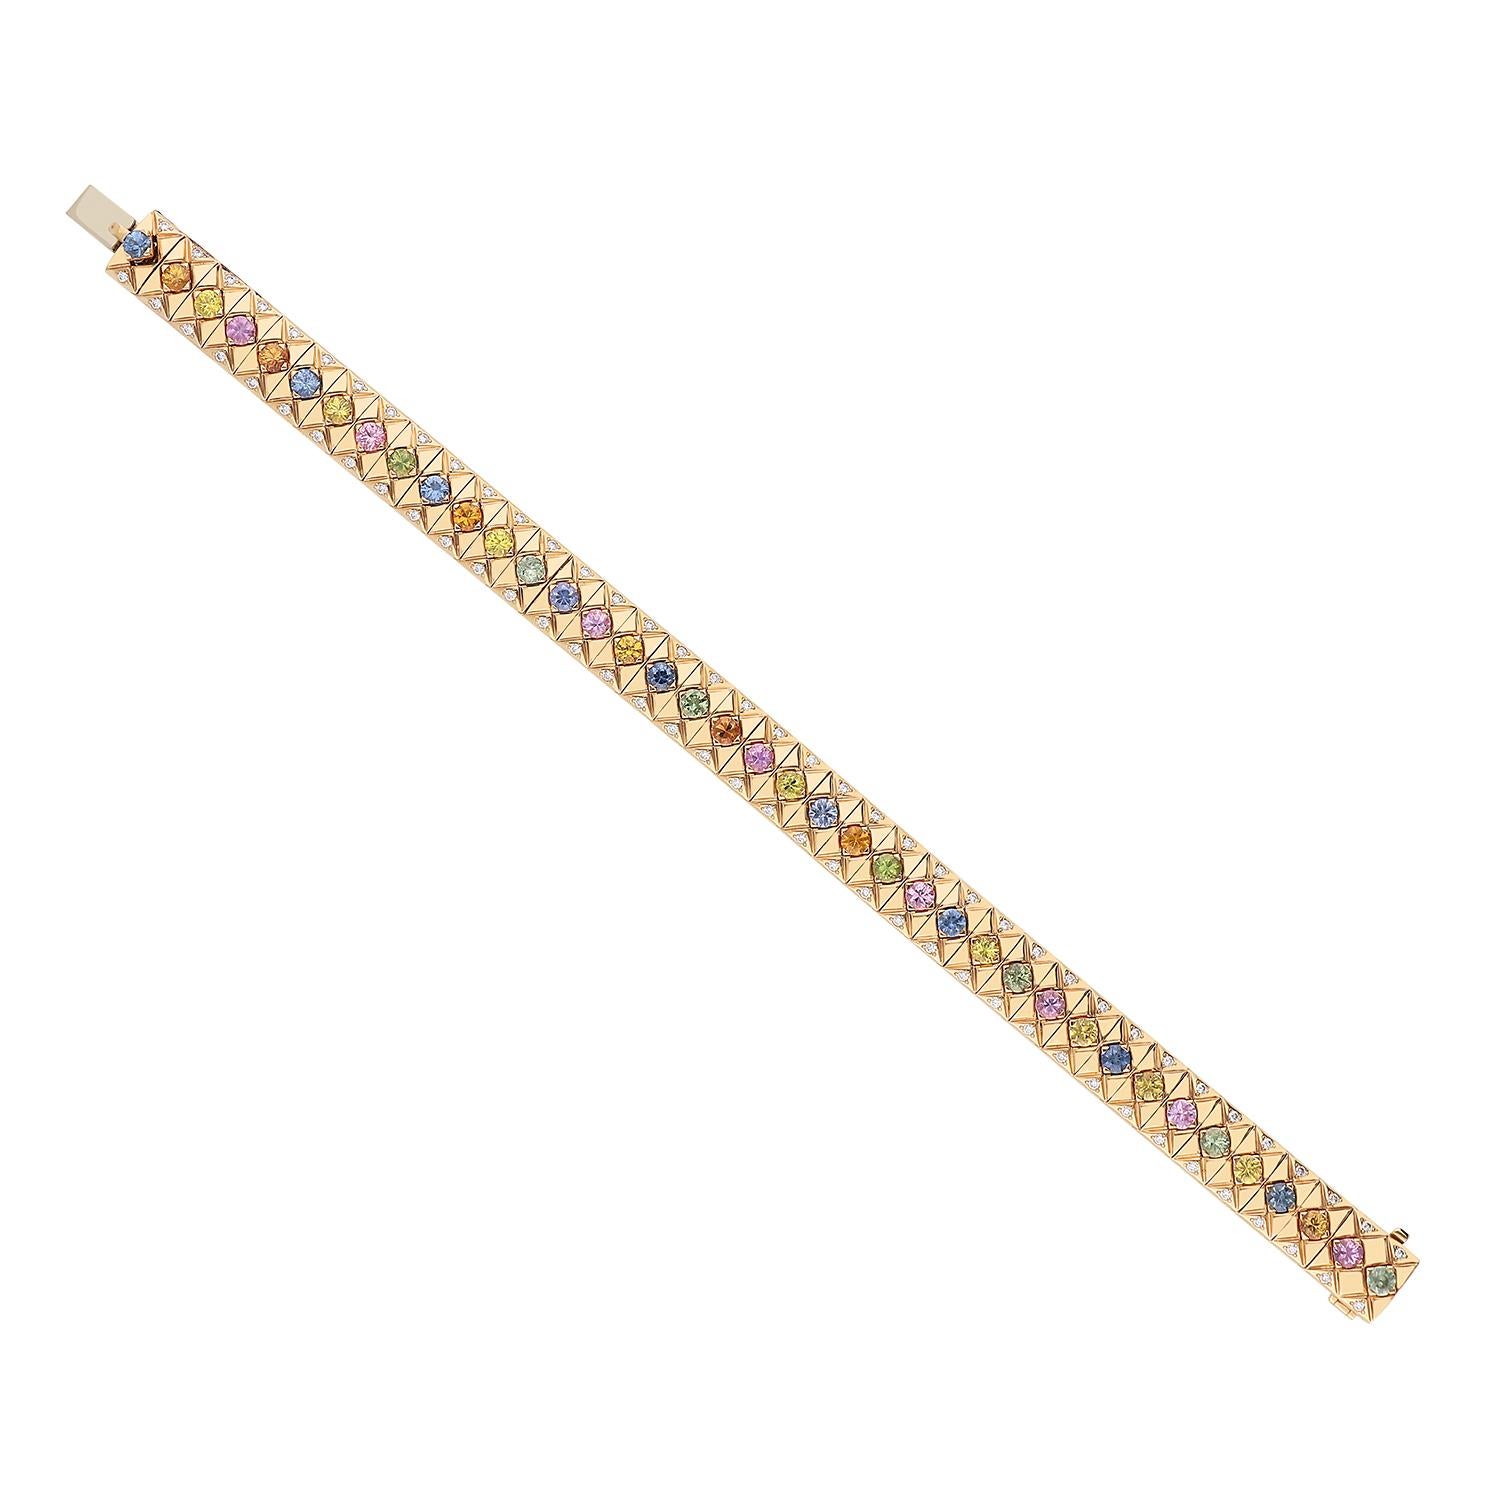 Ein prächtiges Armband aus 18 Karat Roségold mit einem Gesamtgewicht von 39,30 Gramm und 5,56 Karat mehrfarbigen Saphiren im Brillantschliff, die auf flachen Spitzen gefasst sind. Zu beiden Seiten jedes Saphirs befinden sich Diamanten im